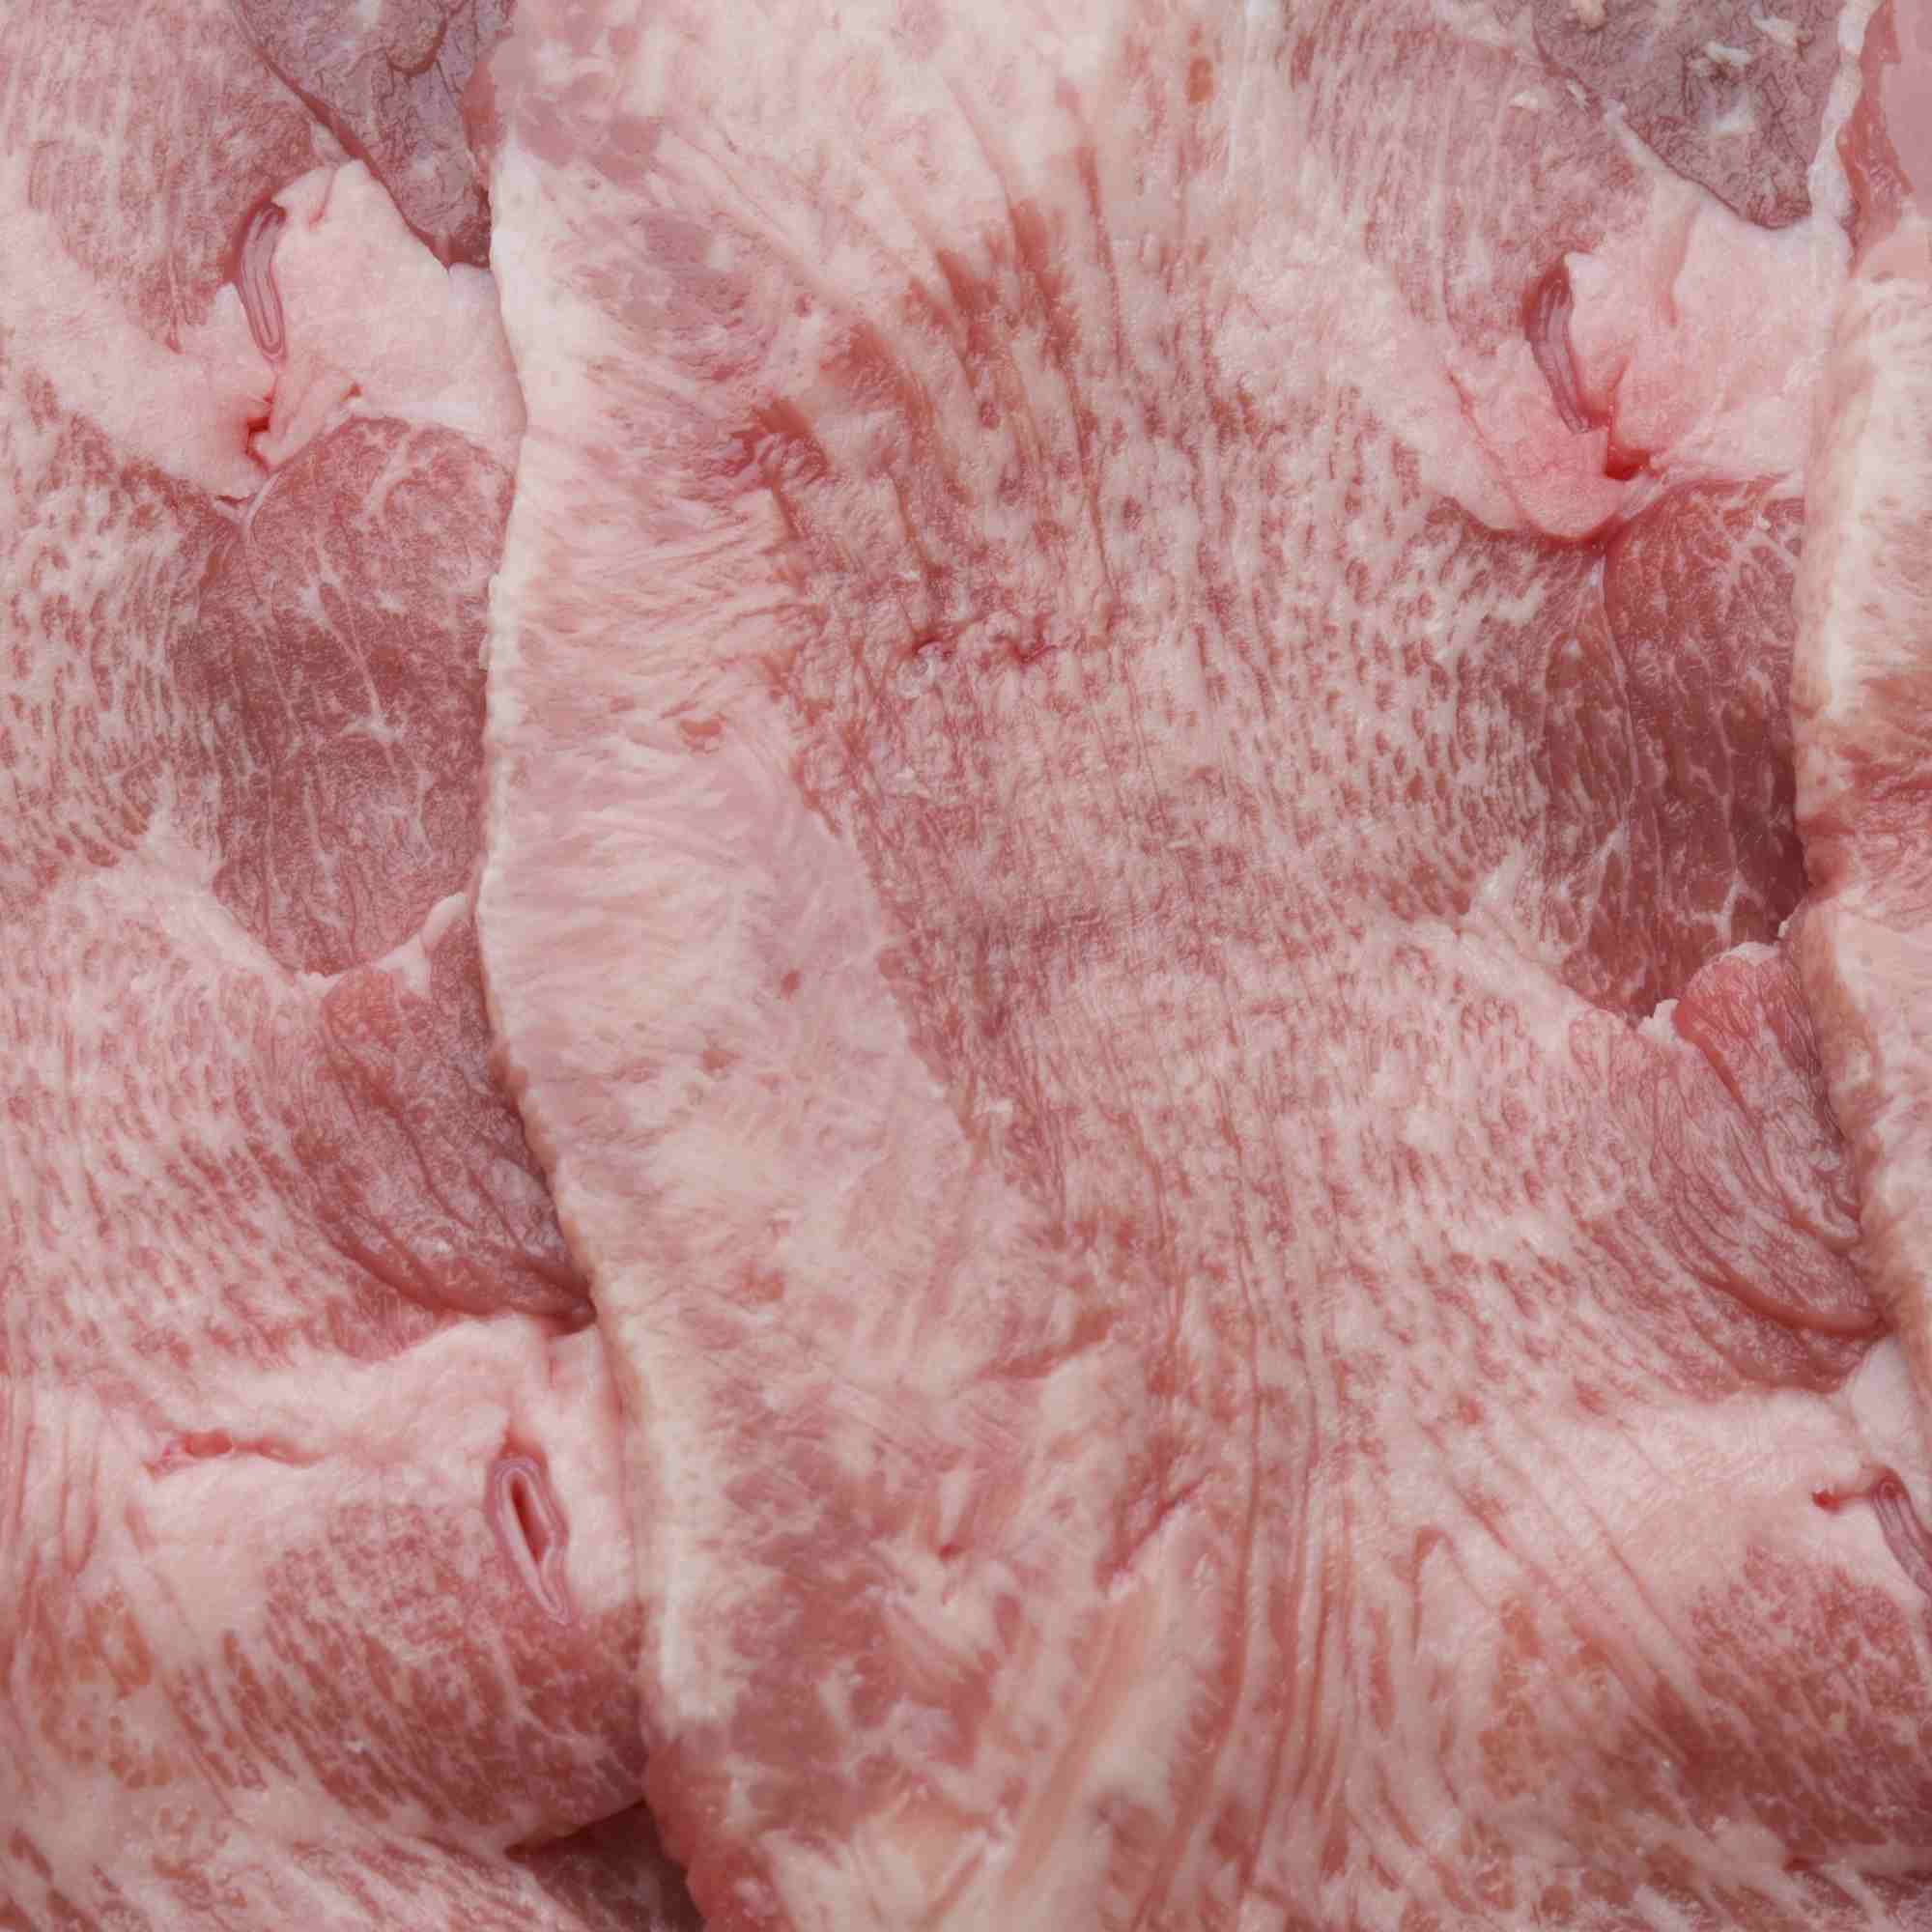 Lamb Tongue $10.50 per kg (min 2kg)